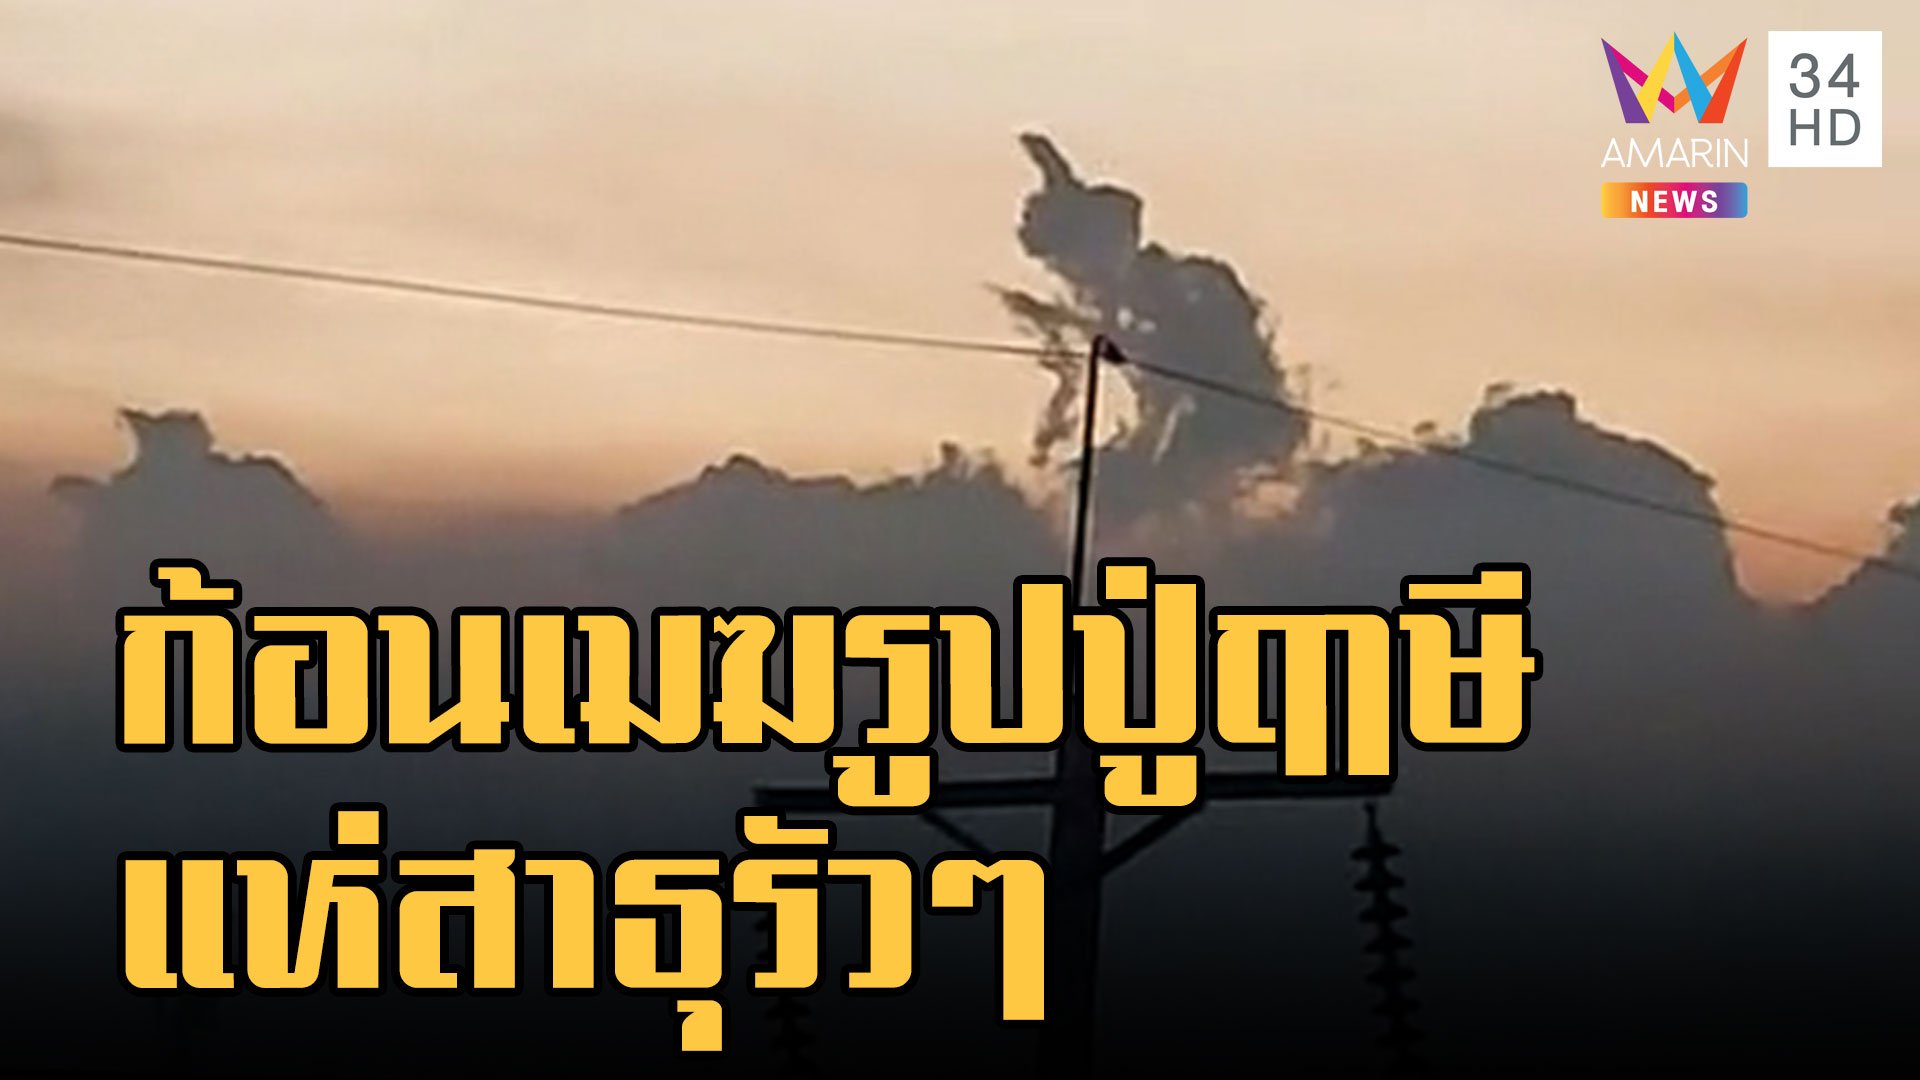 ก้อนเมฆคล้ายปู่ฤาษีเดินดง ชาวเน็ตแห่สาธุ | ข่าวอรุณอมรินทร์ | 12 ธ.ค. 65 | AMARIN TVHD34